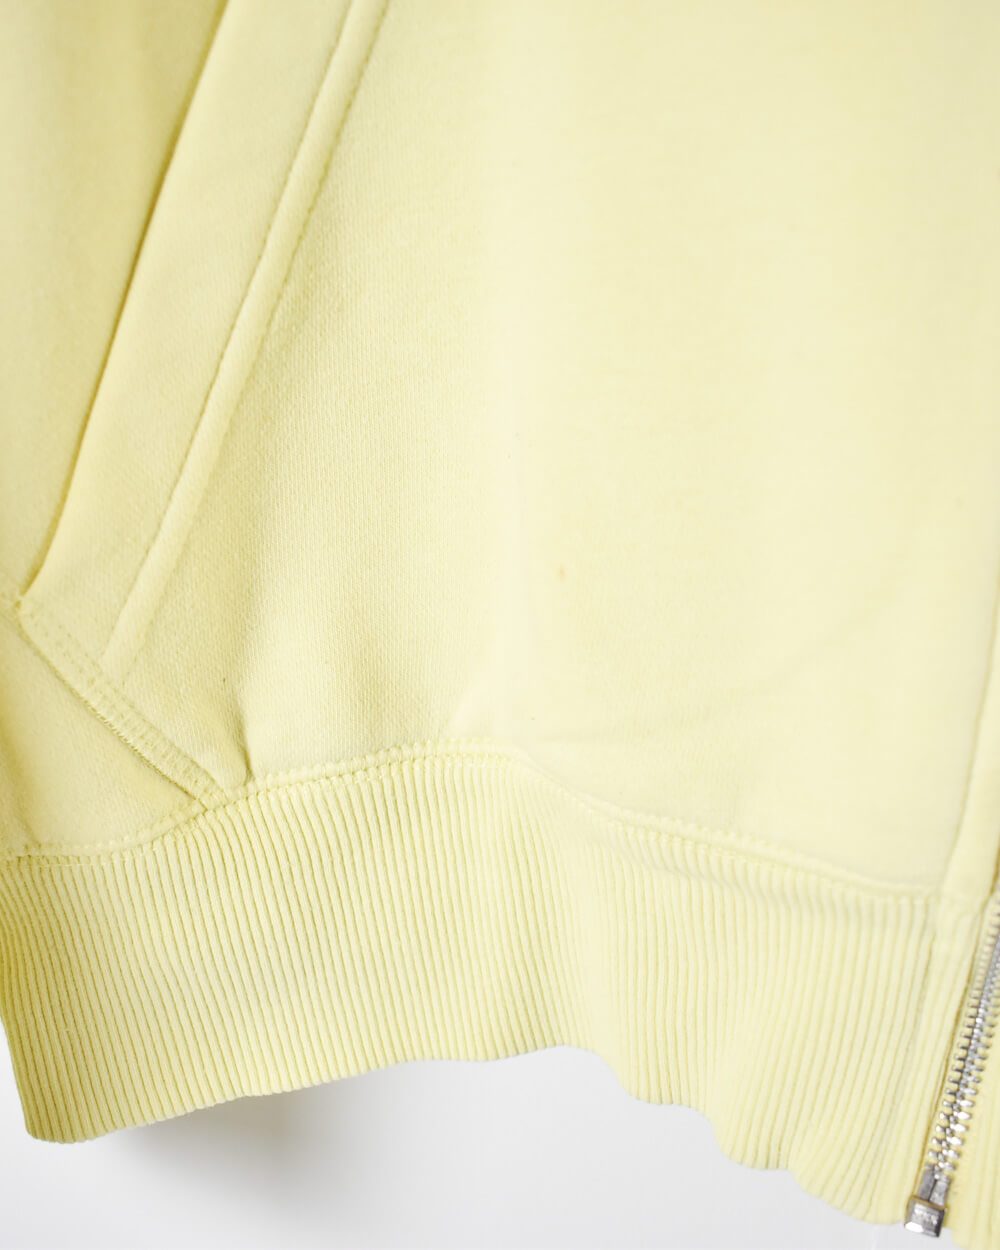 Yellow Nike Zip-Through Hoodie - Large